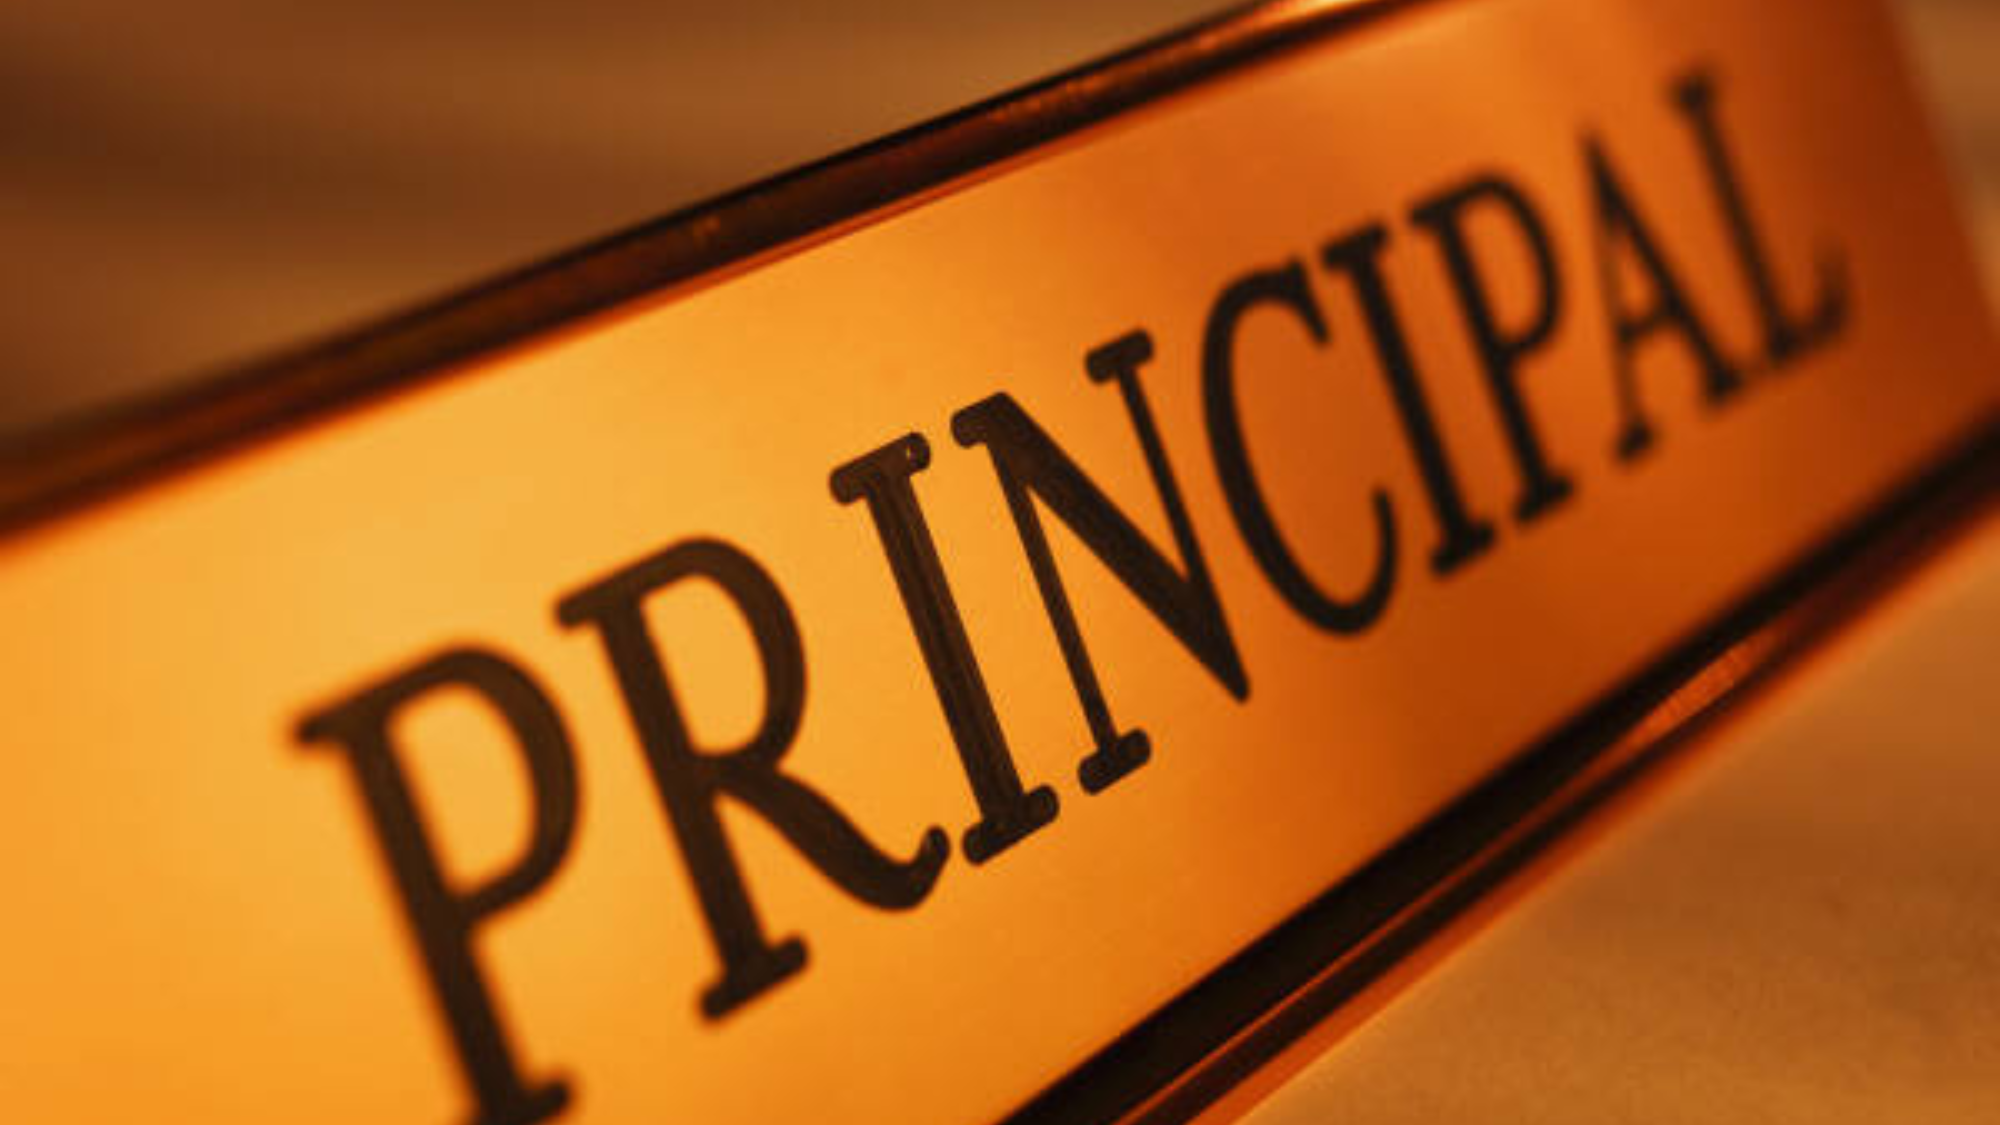 Principal.png